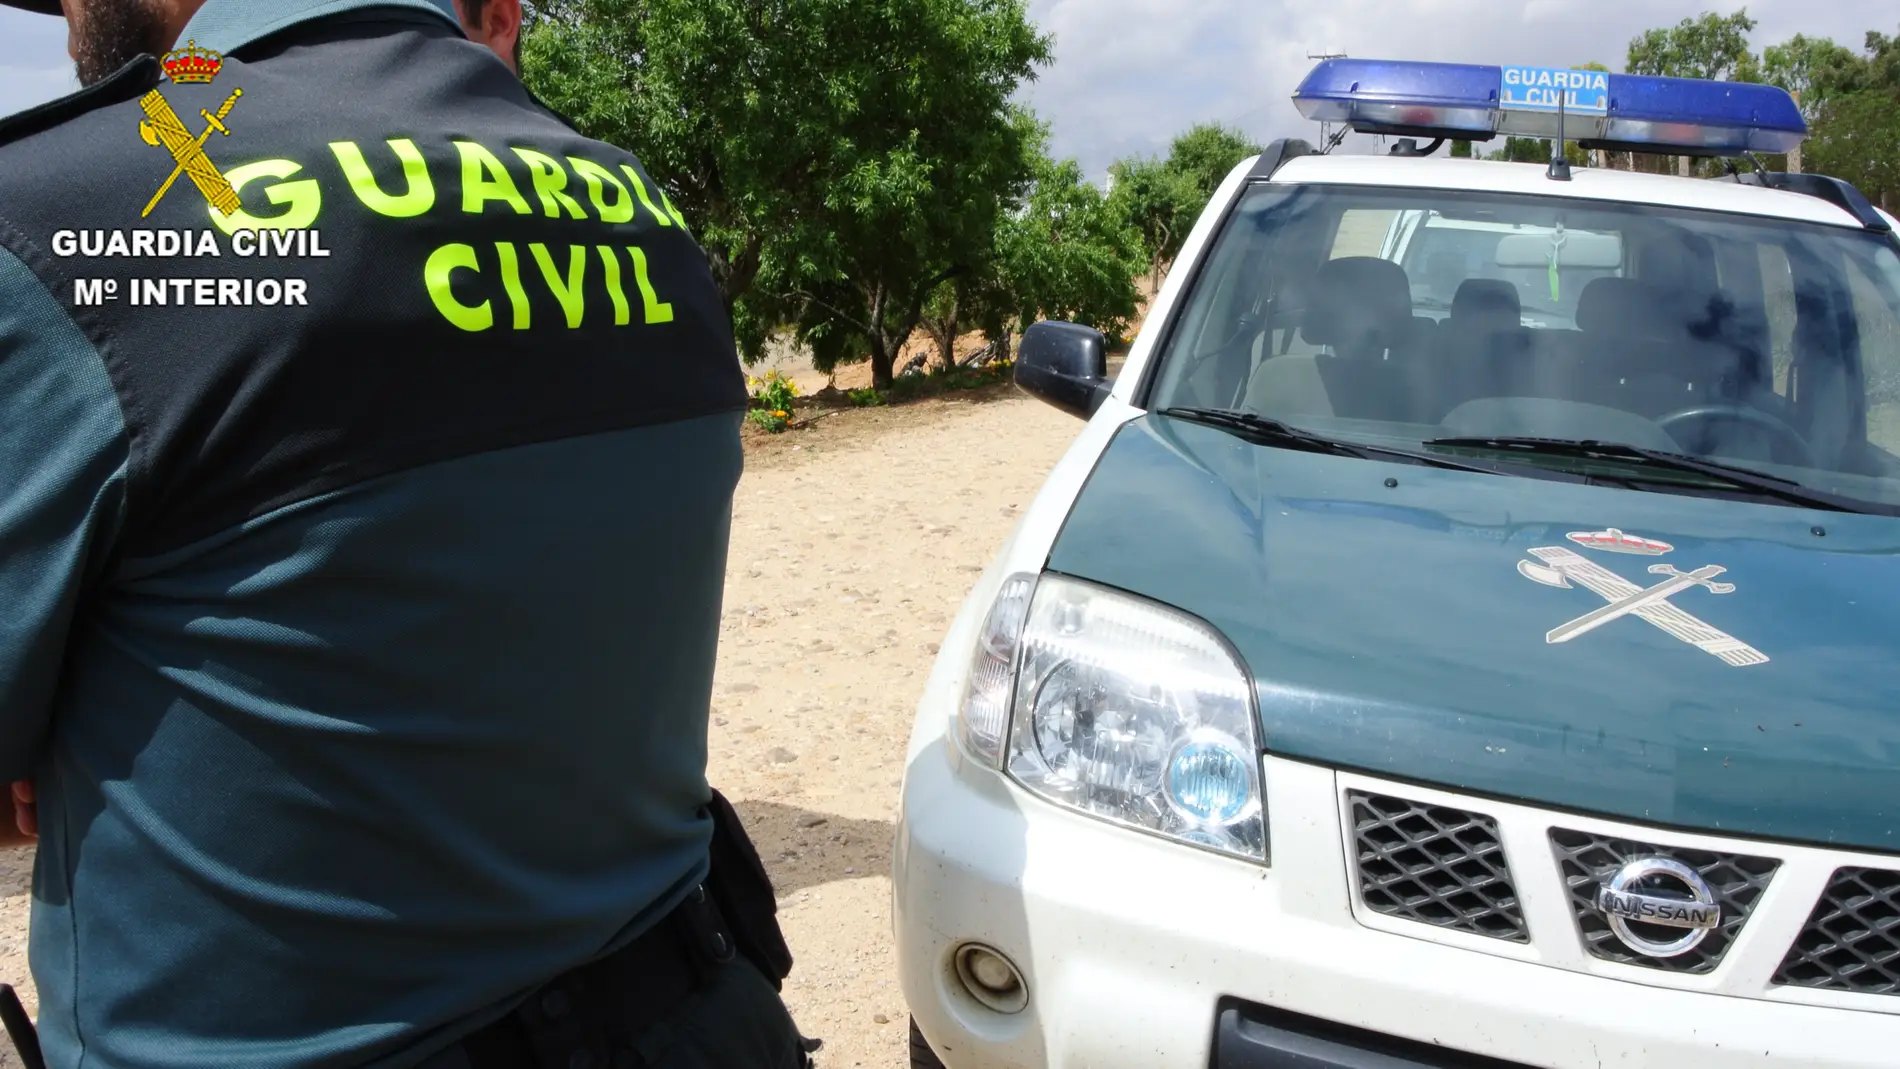 La Guardia Civil detiene a una persona por agredir a otra con discapacidad en Gerindote 